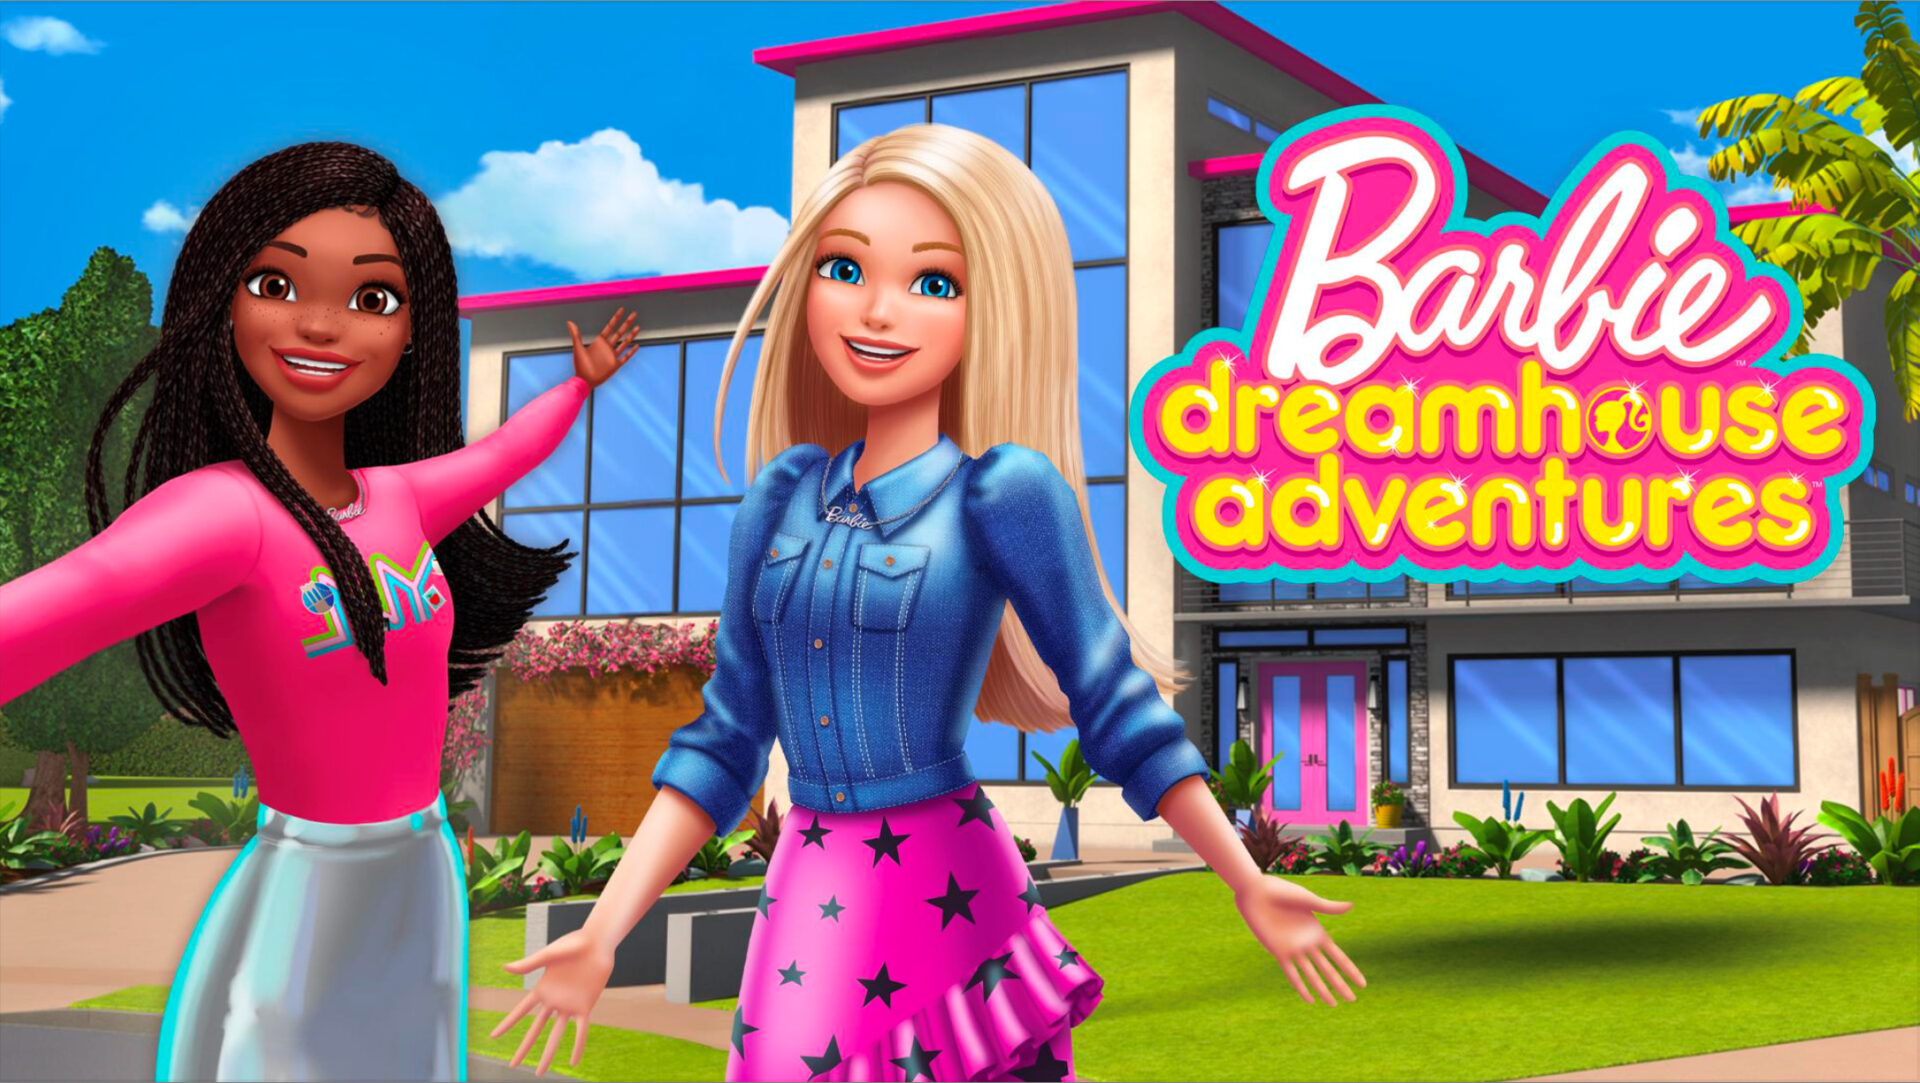 Barbie DreamHouse Adventures !!! Jogo da casa da Barbie!!! Parte 5 A  cozinha 